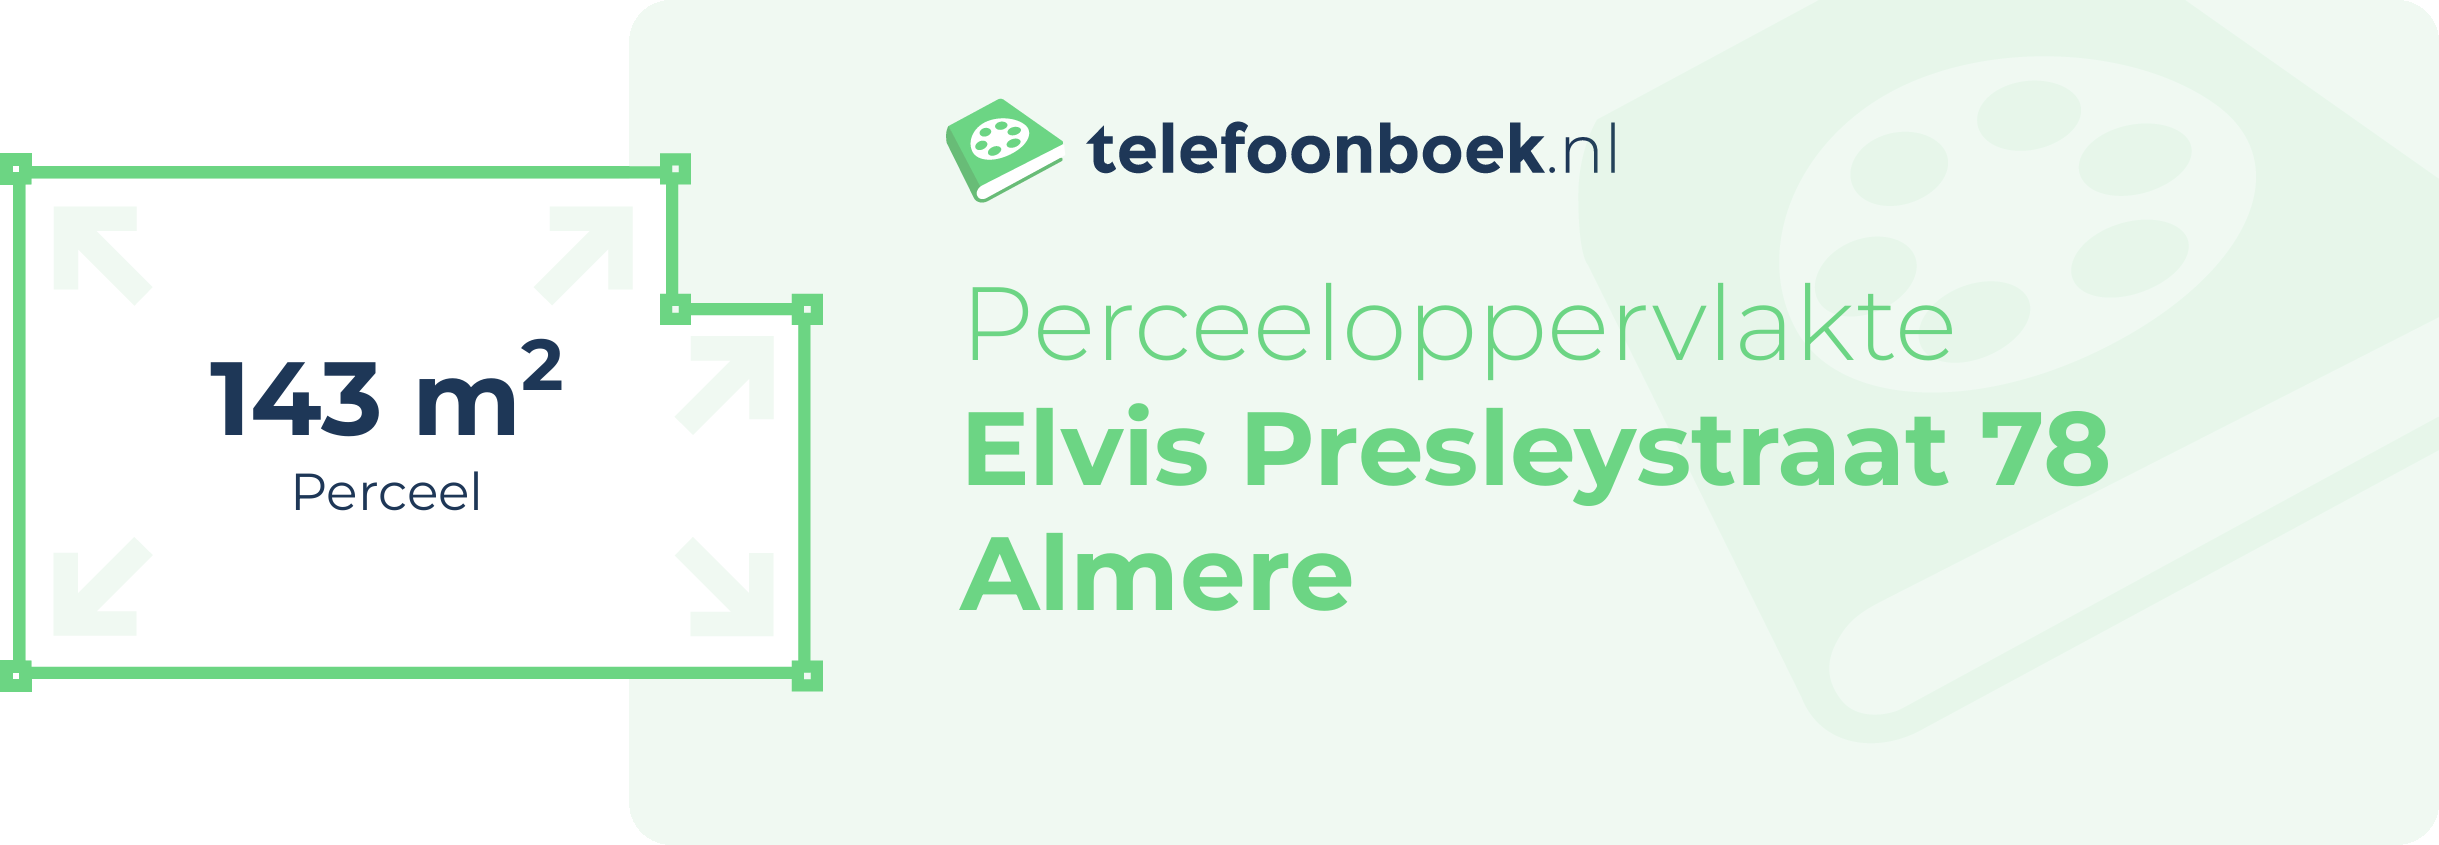 Perceeloppervlakte Elvis Presleystraat 78 Almere